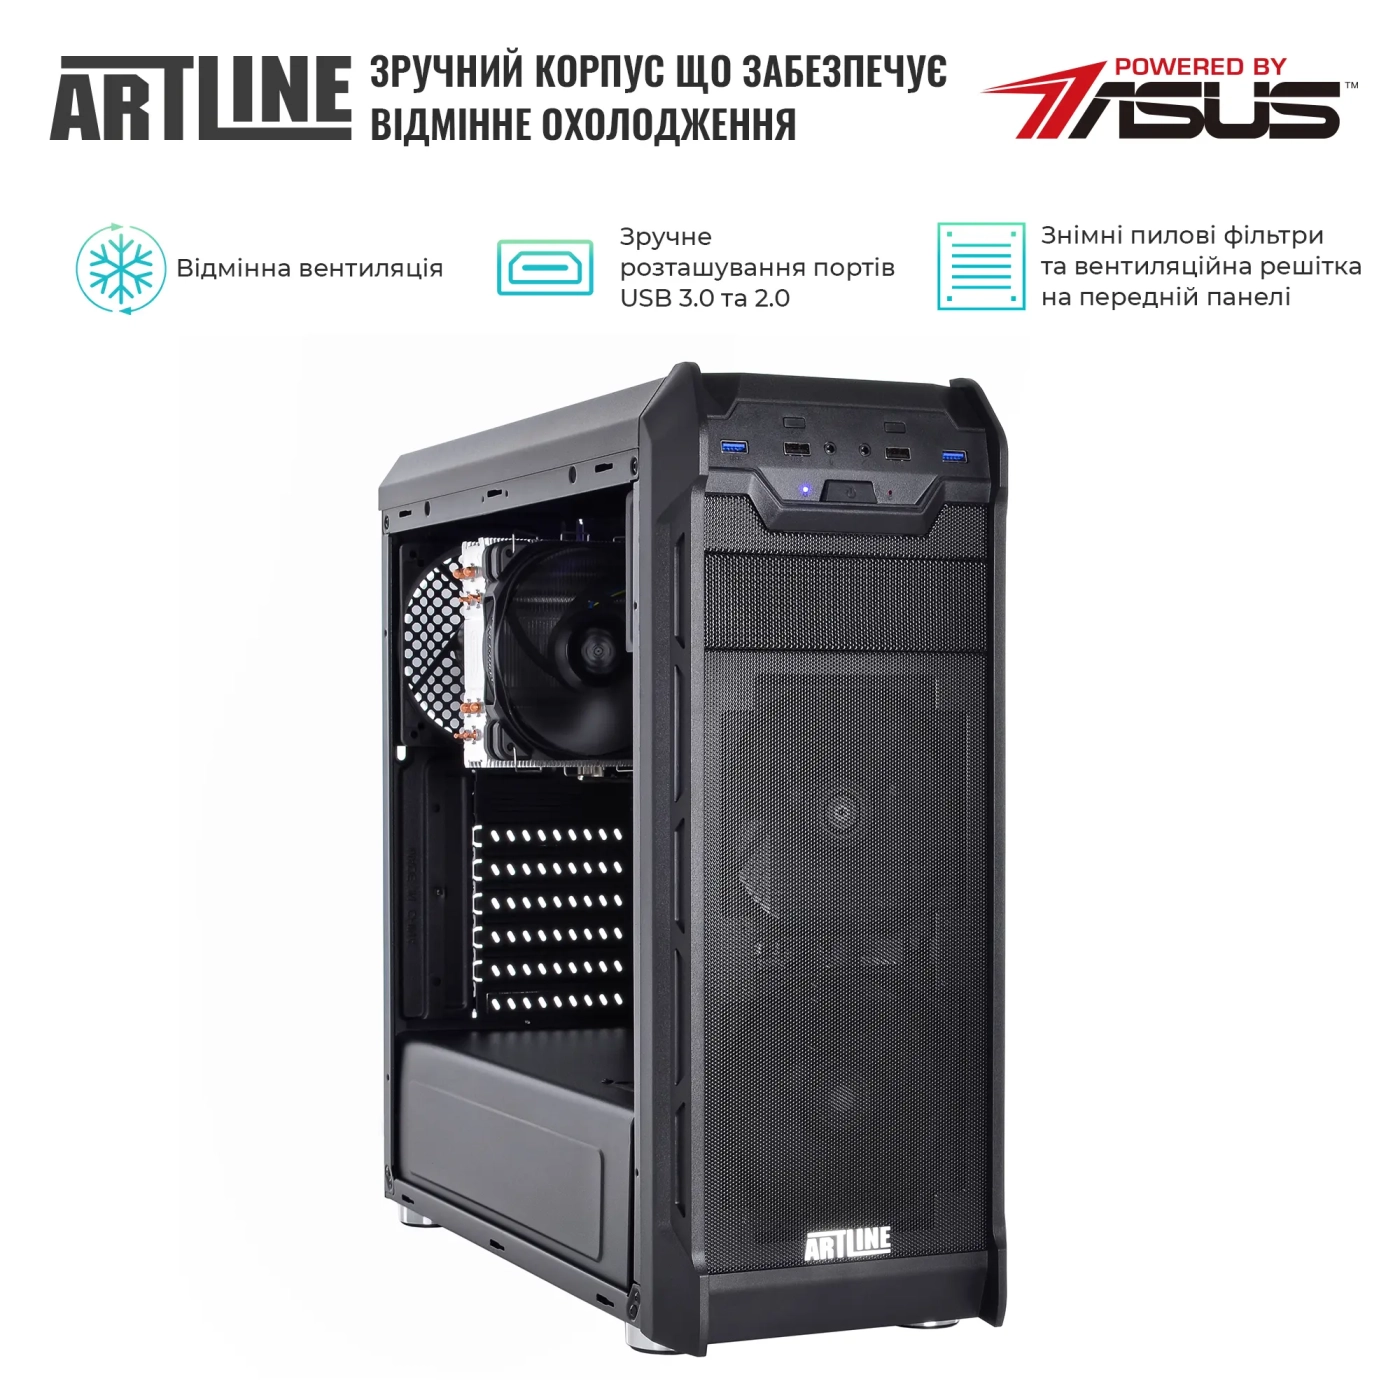 Купить Сервер ARTLINE Business T27 (T27v30) - фото 3